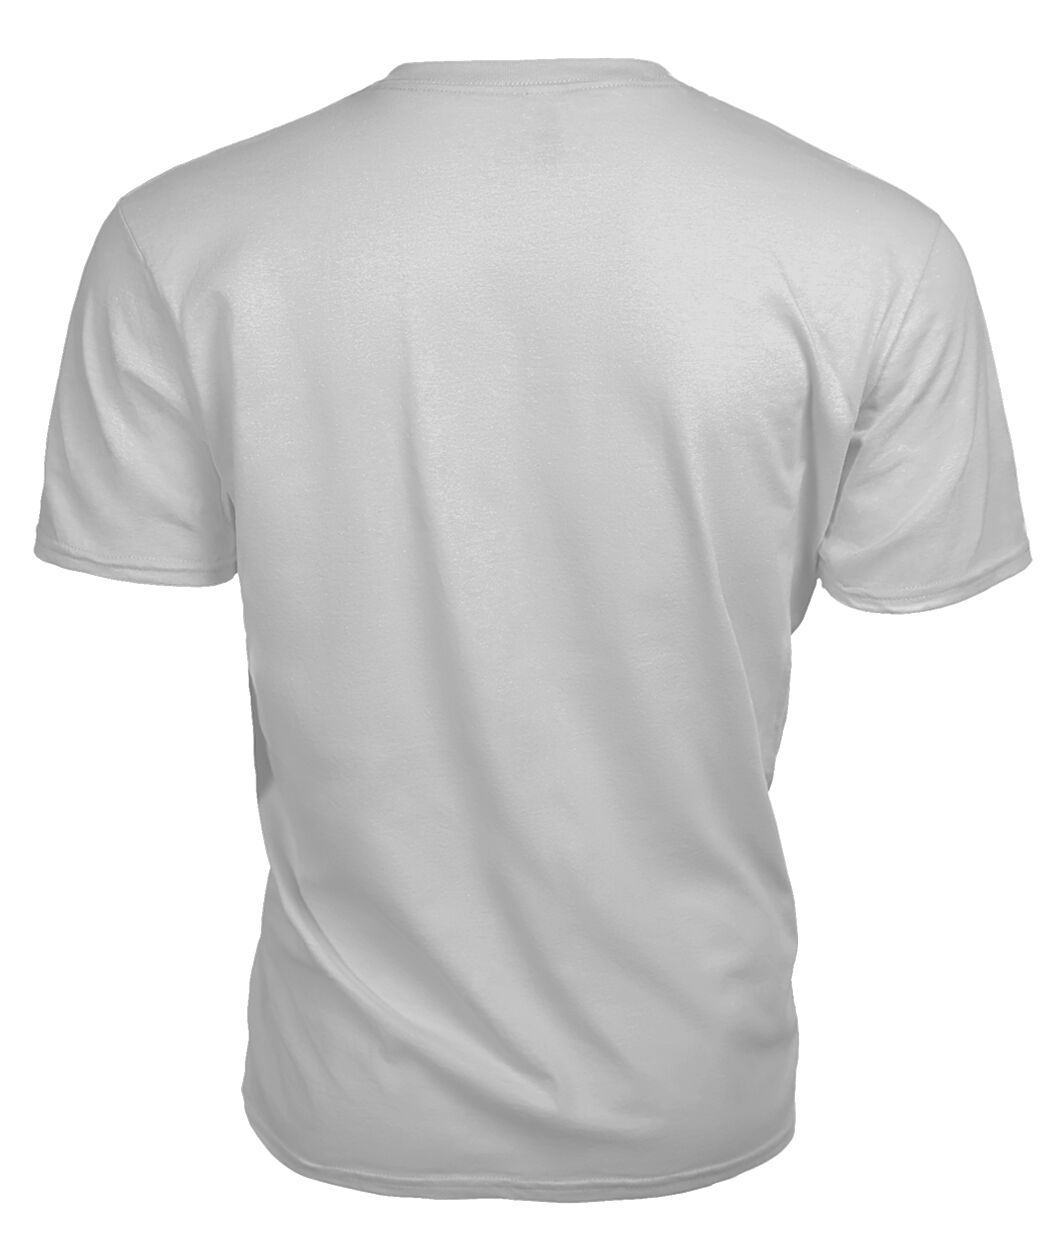 Anstruther Family Tartan - 2D T-shirt